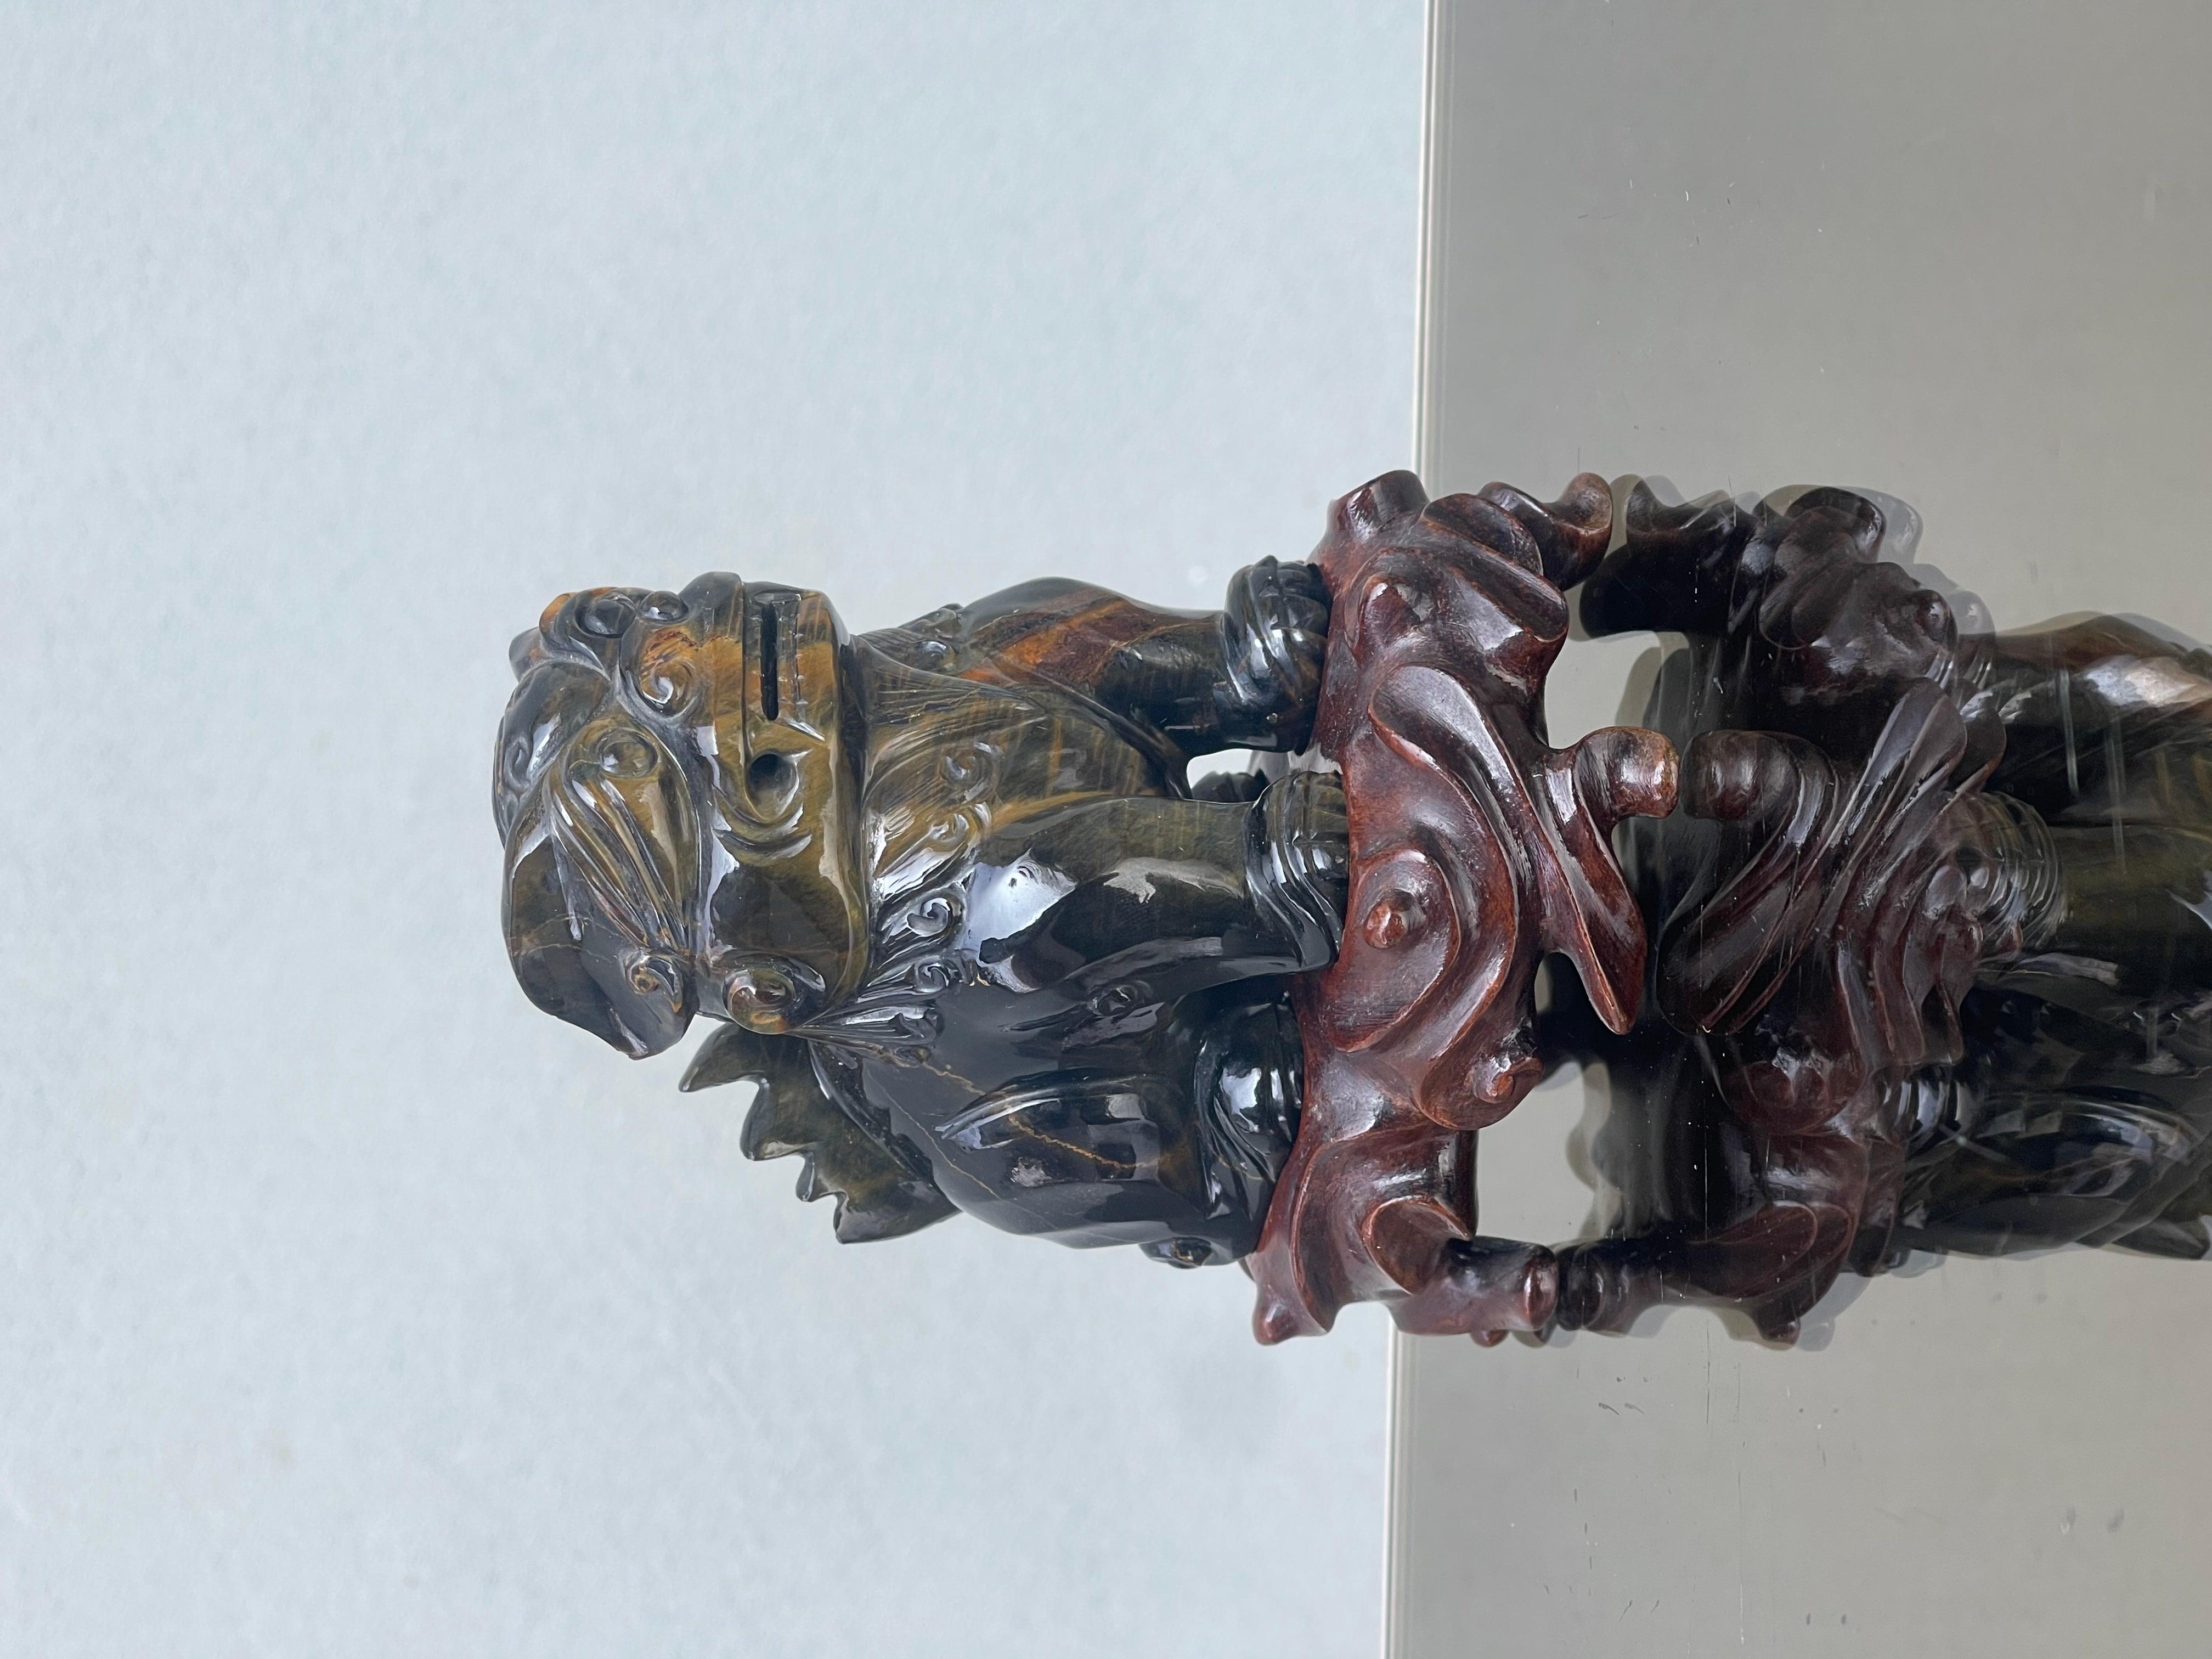 cane di pho - scultura cane di pho - occhio di tigre - legno di rosa.

Descrizione : 
Cane di pho realizzato a mano in pietra dura occhio di tigre. 
la scultura e appoggiata su una base di legno di rosa. 

Origini : 
china 

Periodo di